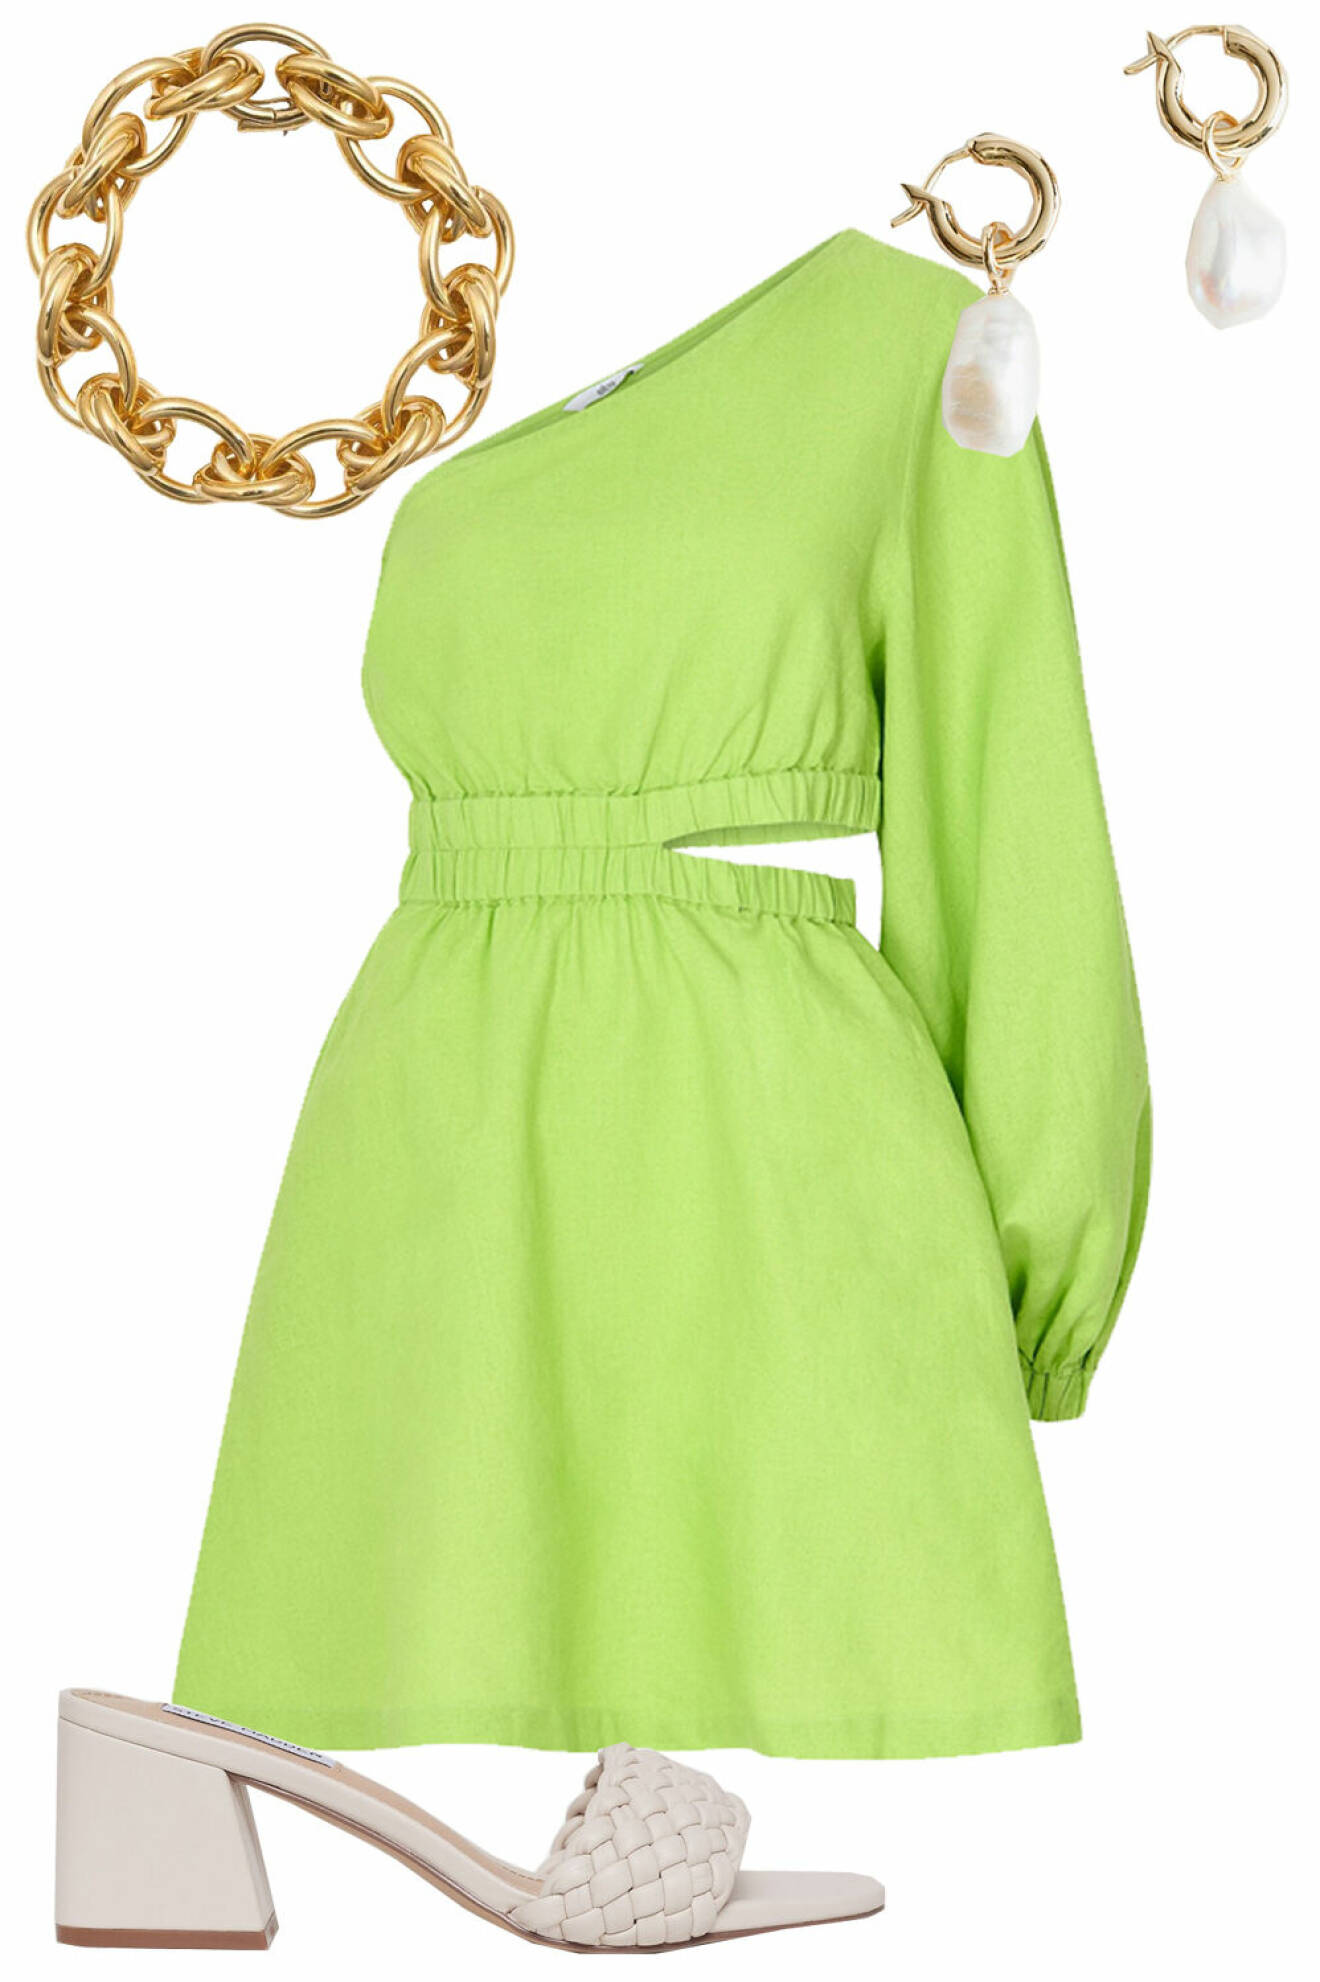 snygg outfit bröllop: limegrön cocktailklänning, kedjearmband, pärlörhängen och flätade klackar